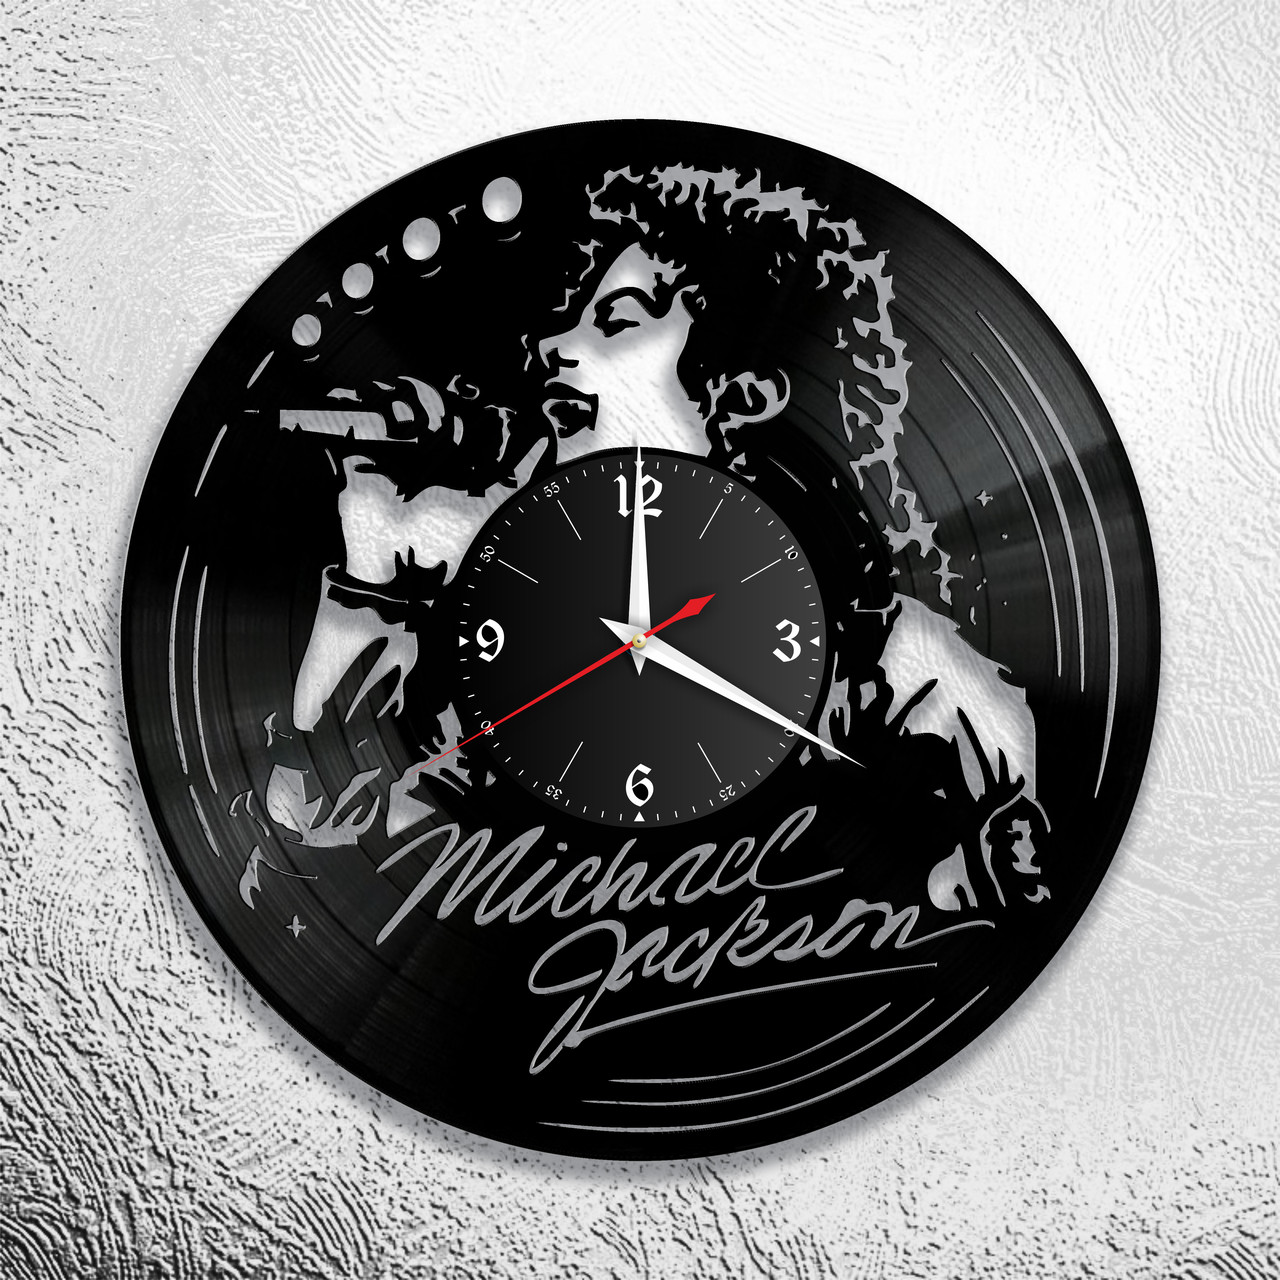 Оригинальные часы из виниловых пластинок "Майкл Джексон" версия 1, фото 1